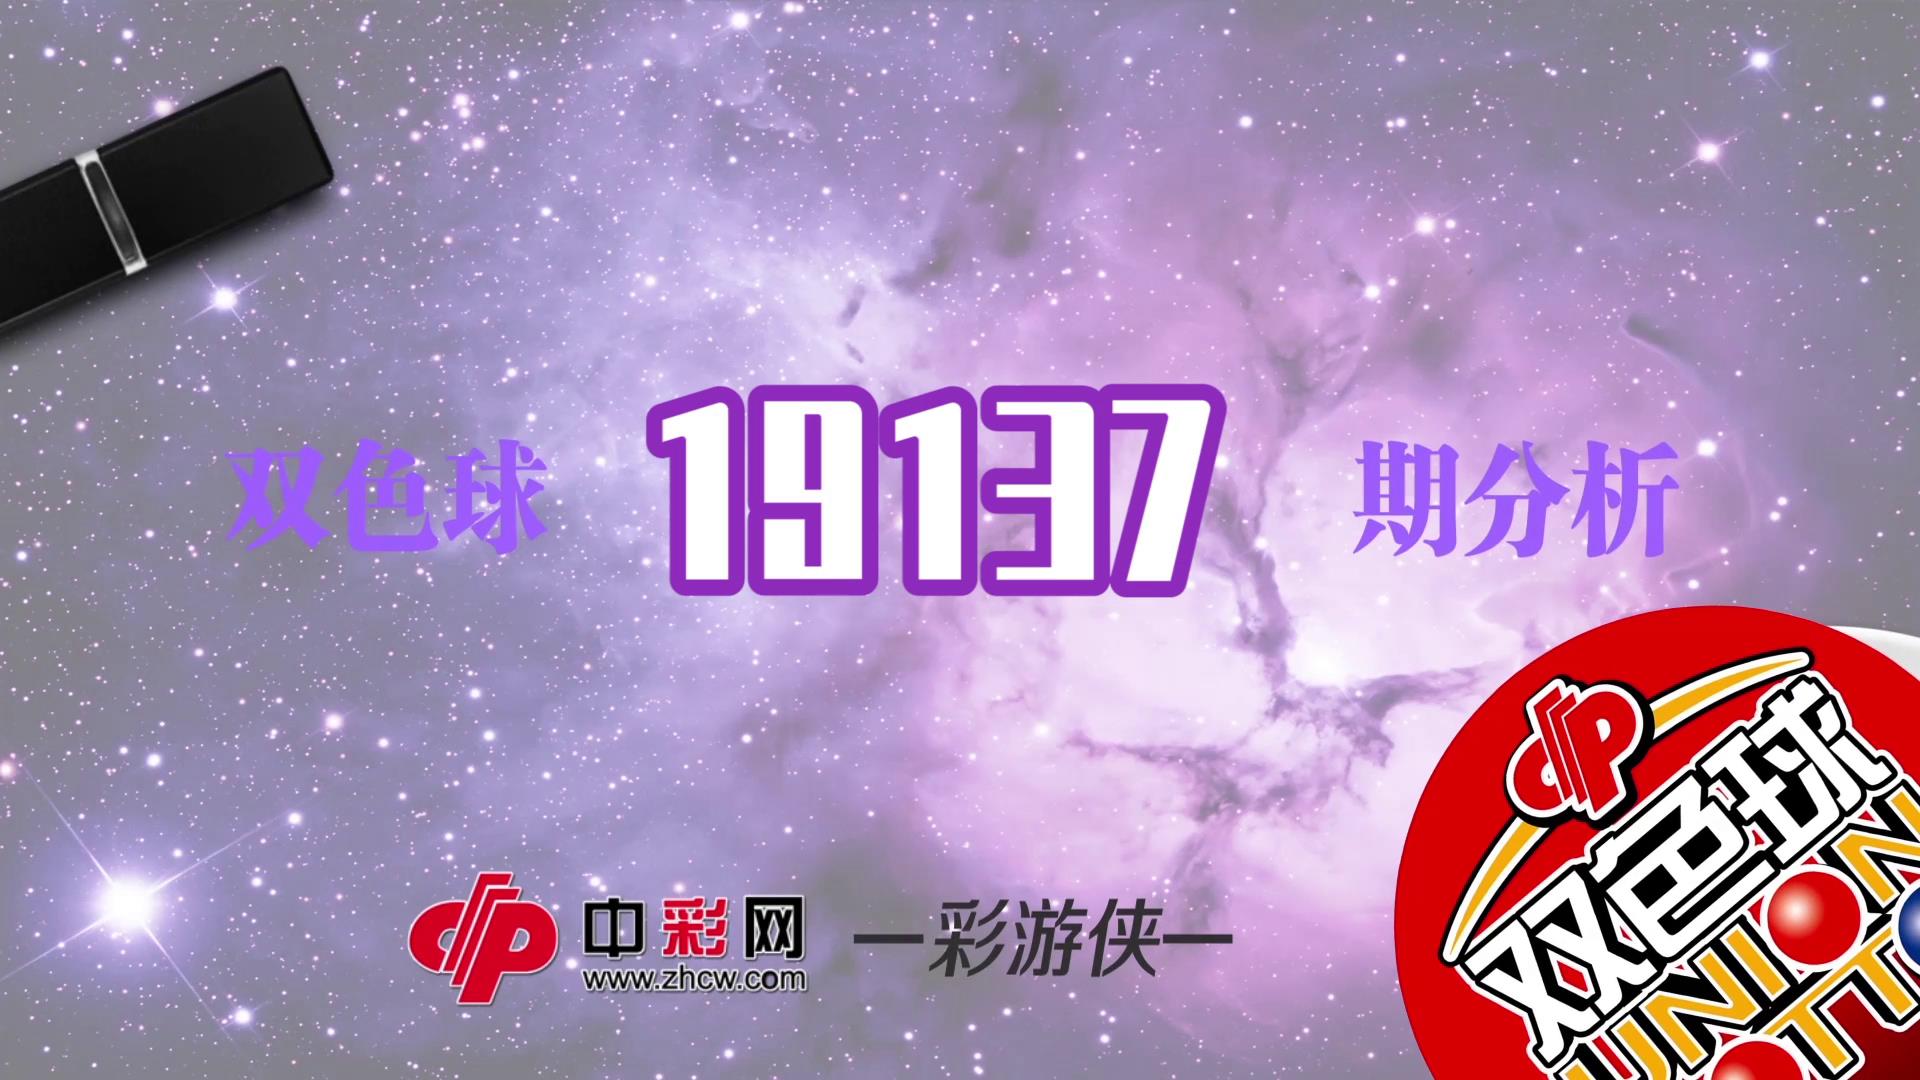 【中彩视频】彩游侠双色球第19137期